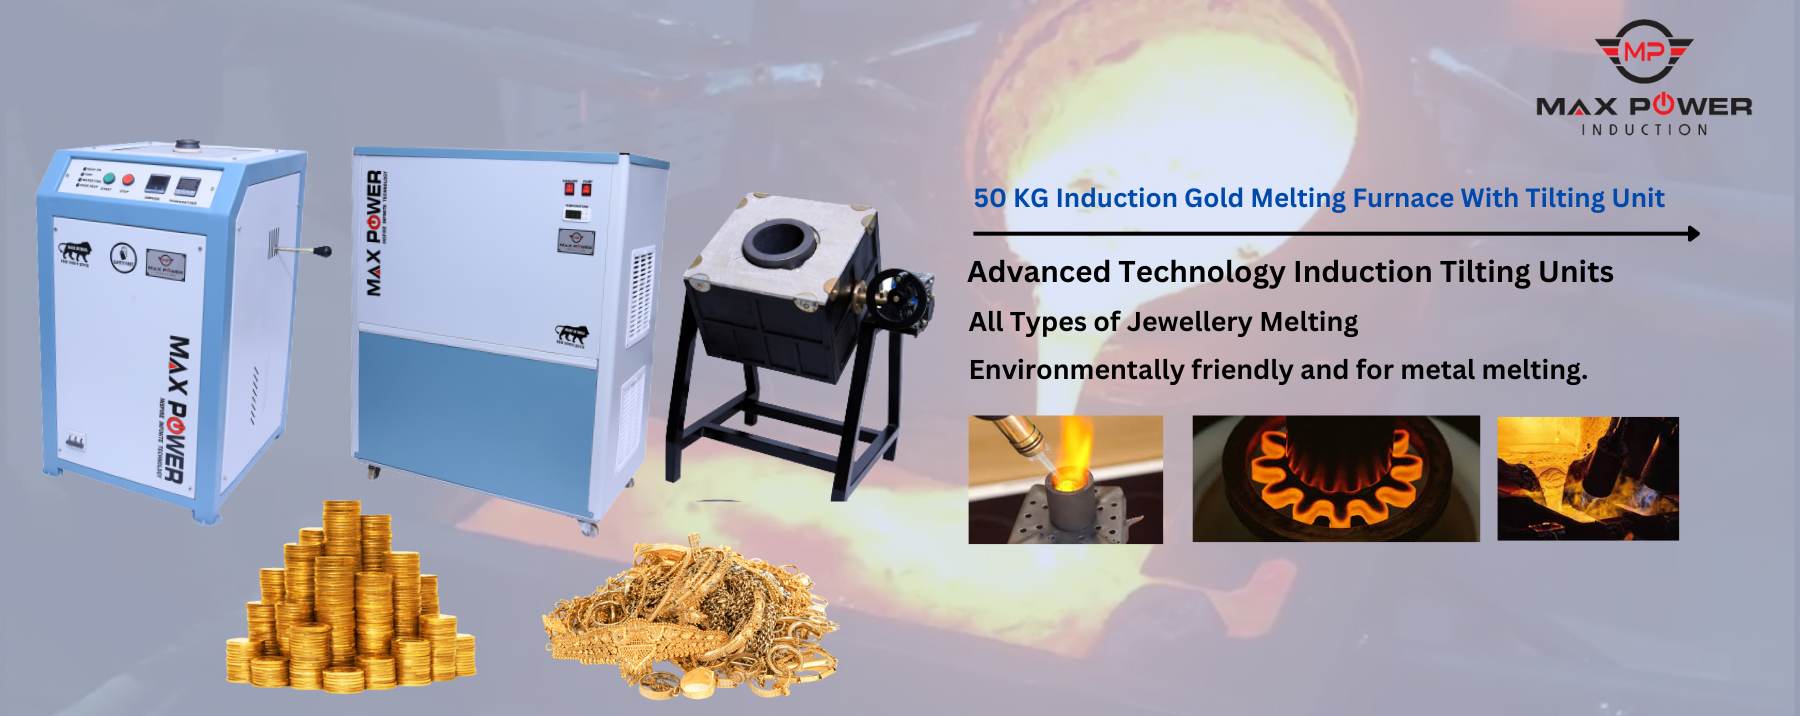 50 KG Induction Gold Melting Furnace With Tilting Unit